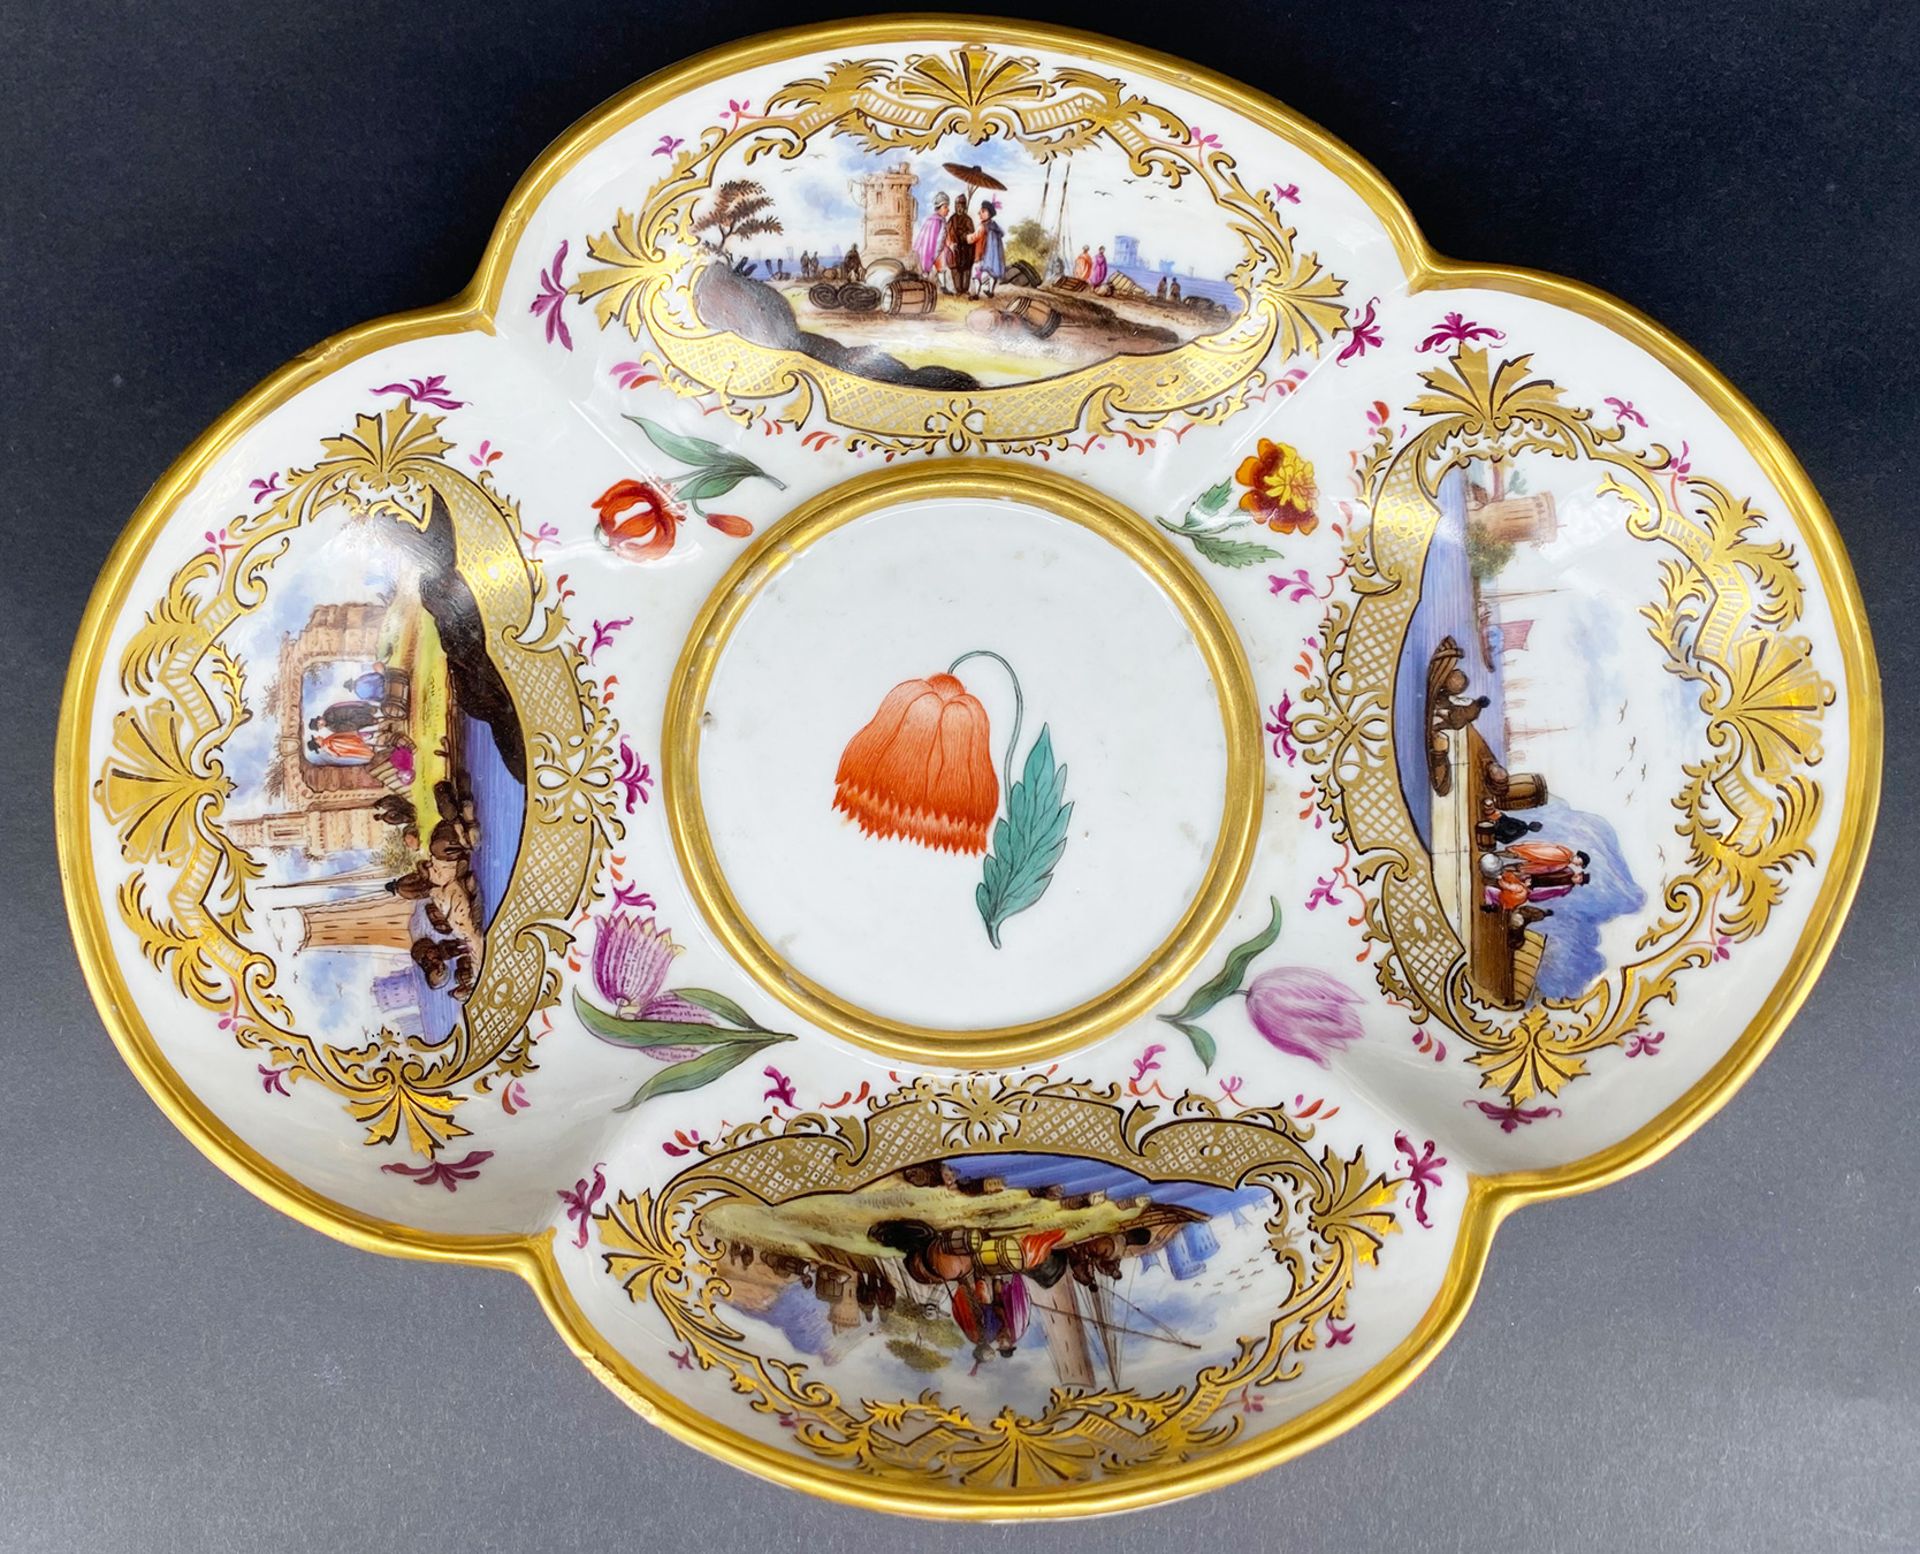 Meissen, Vierpass-Schale: oval-vierpassige Schale mit roter Blume im runden Spiegel, in den vier